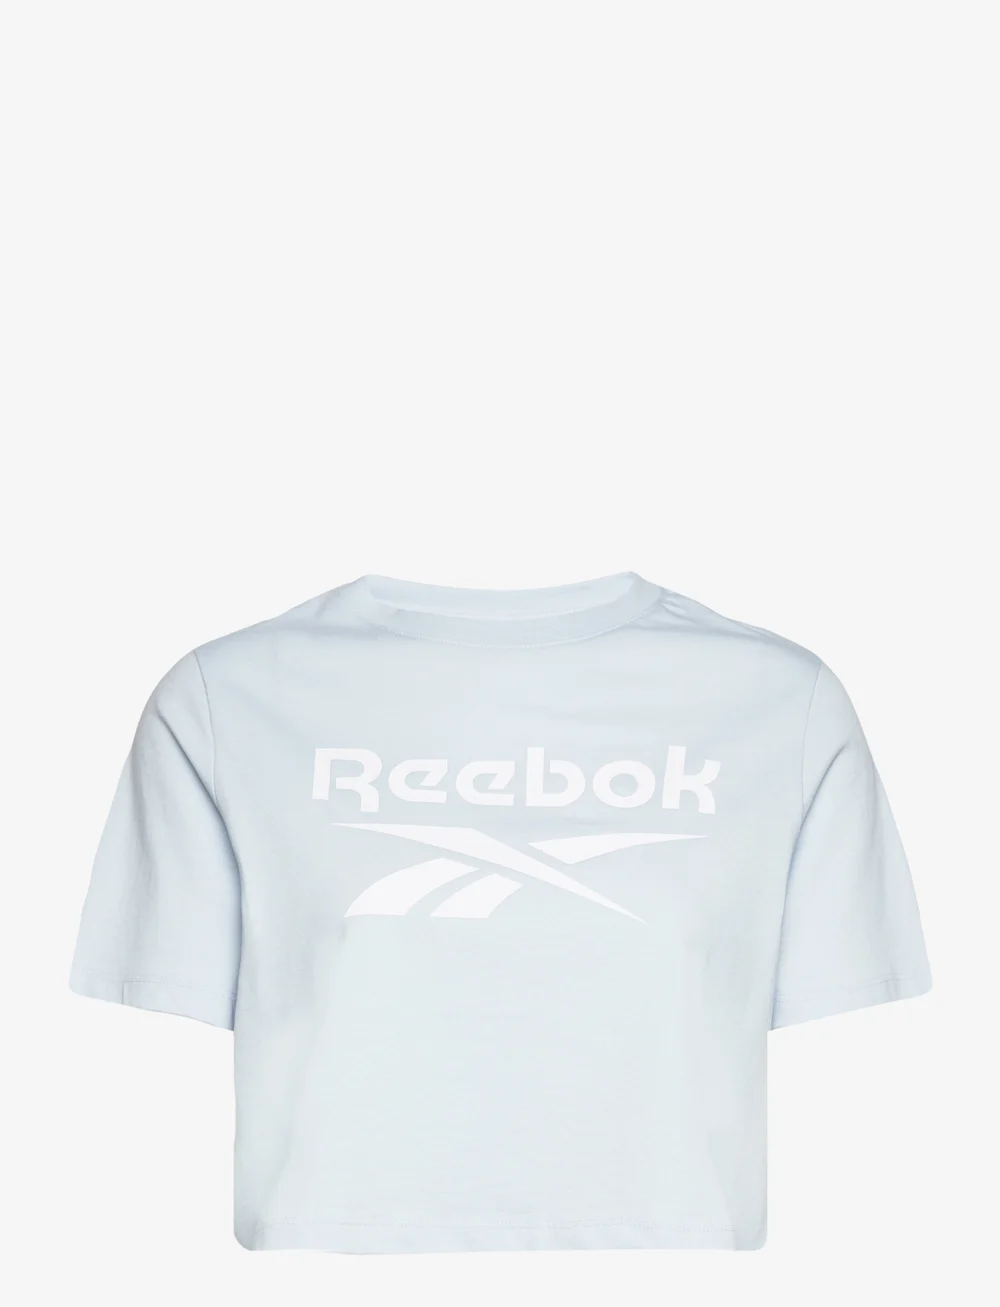 Reebok Performance Ri Bl Crop Tee – t-shirts & tops – shop at Booztlet